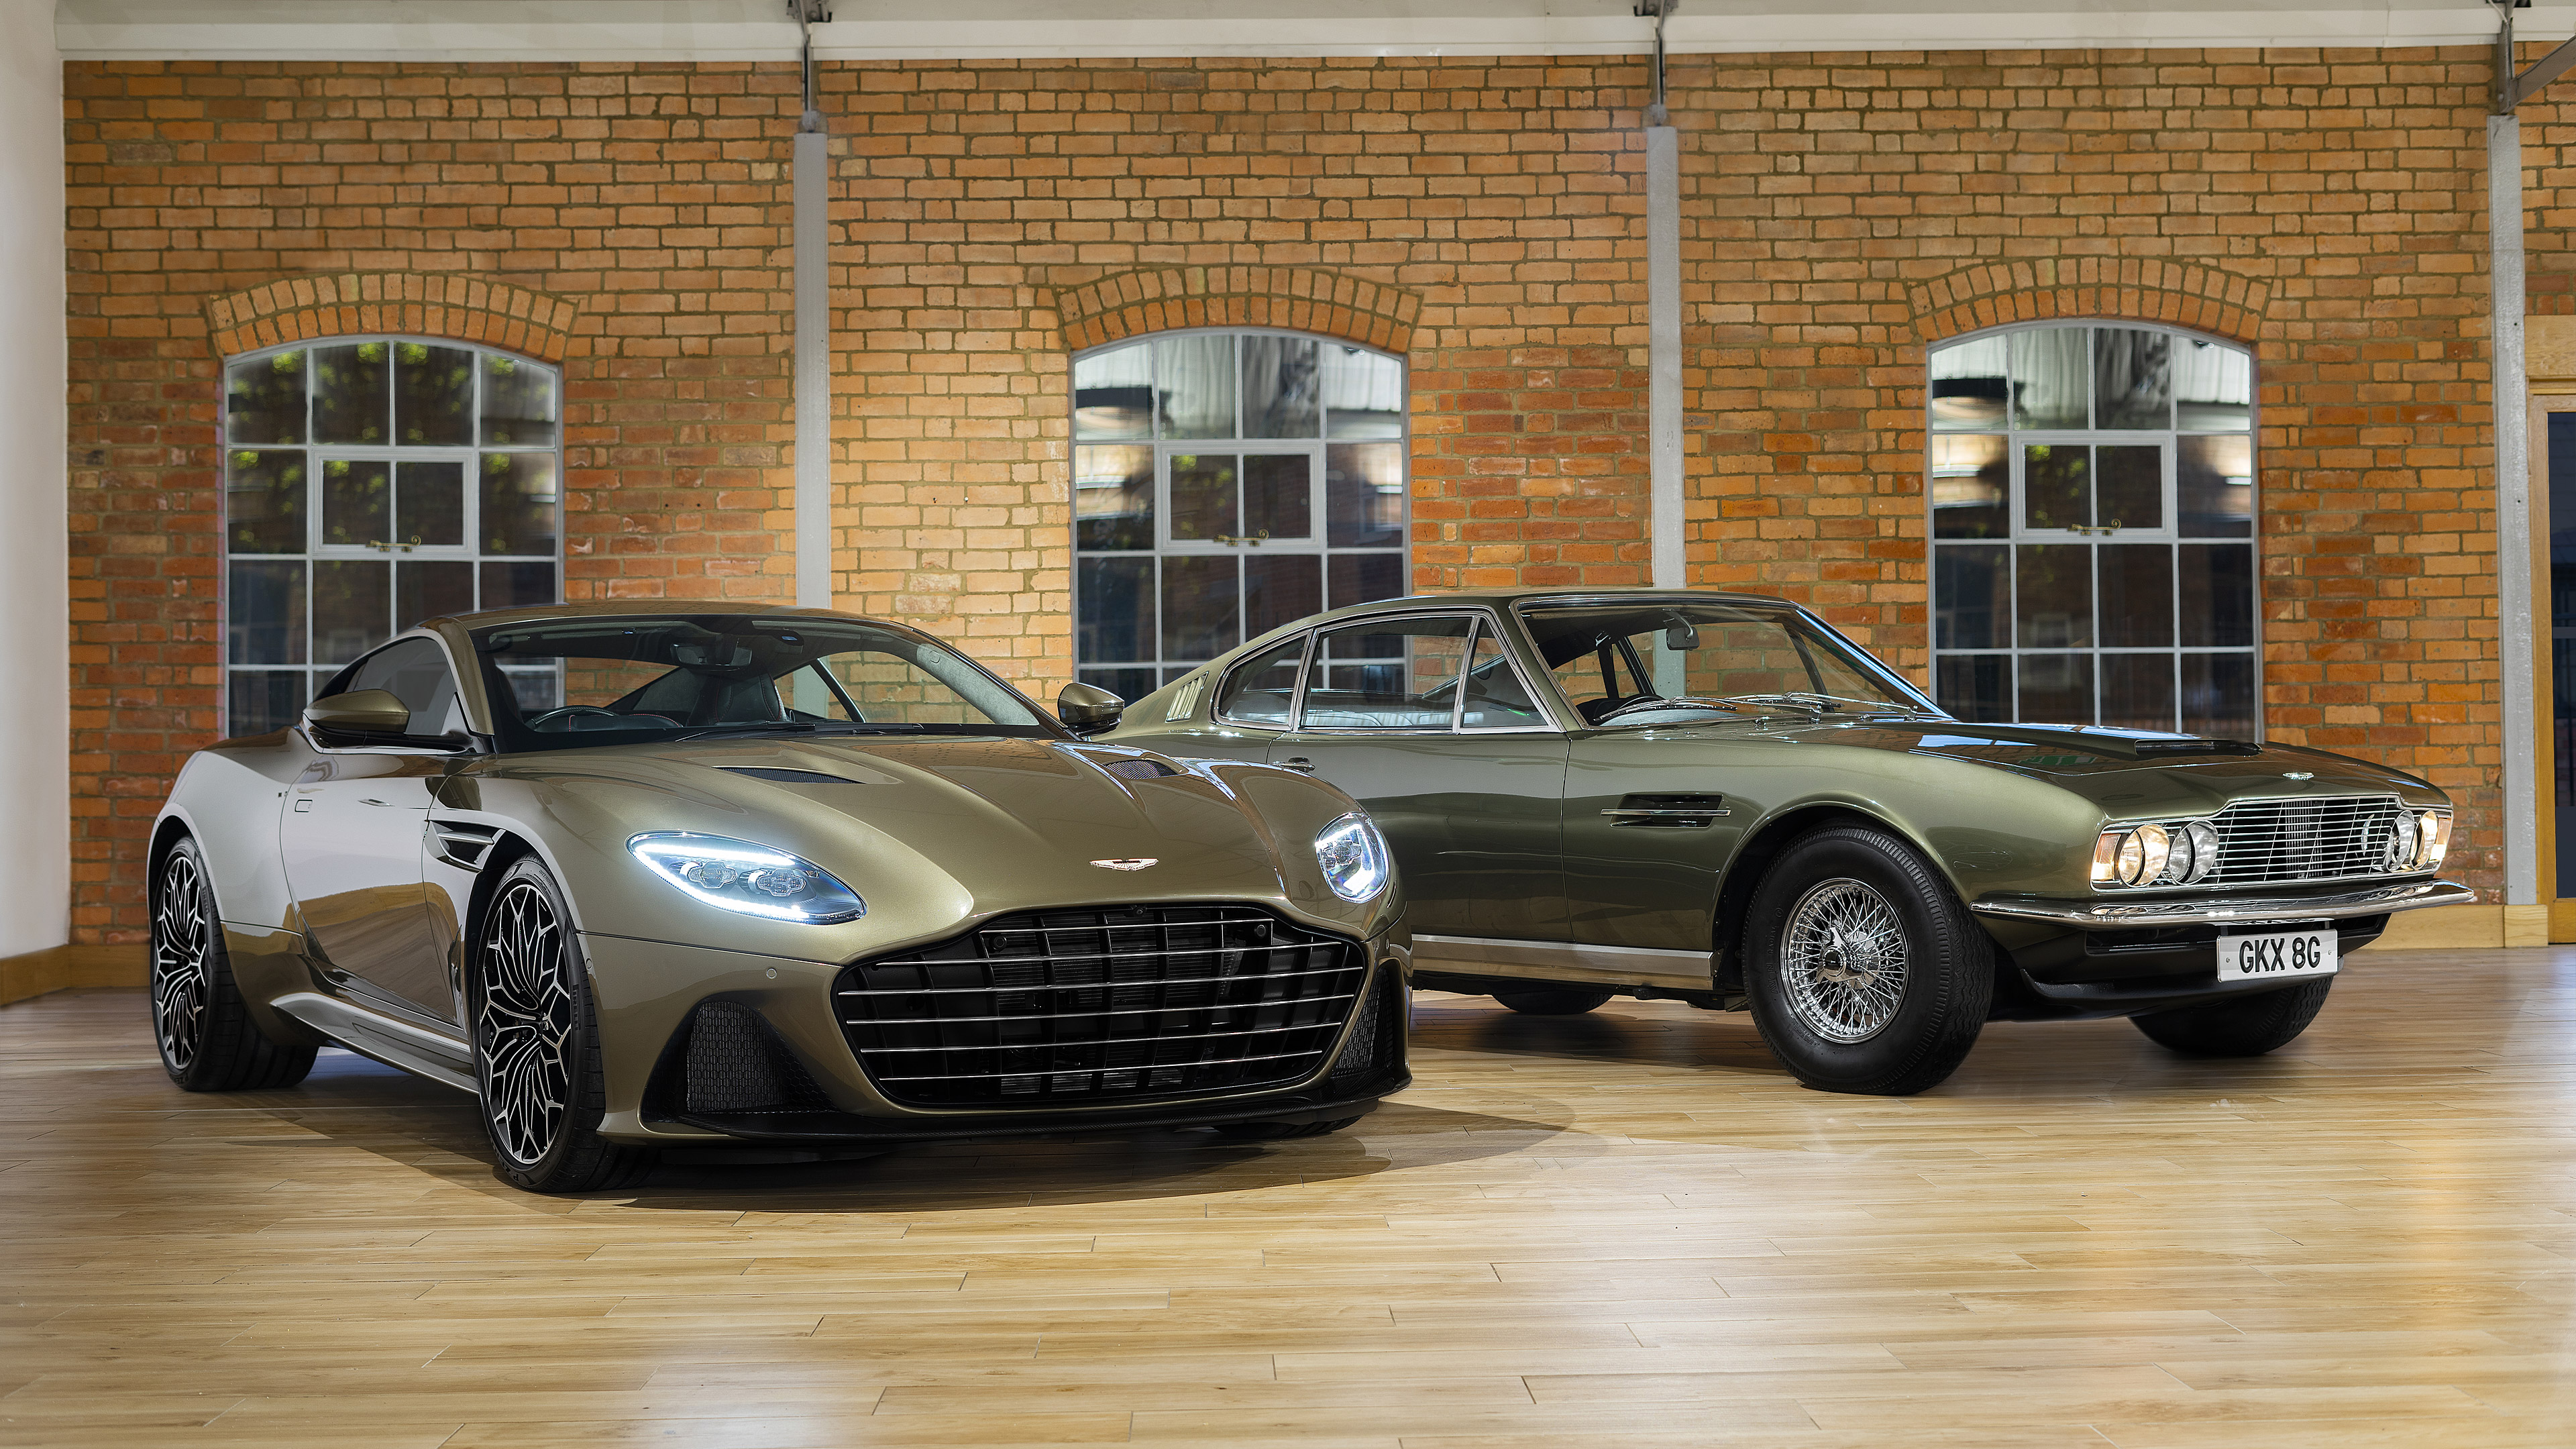 Скачать обои Aston Martin Dbs Superleggera Ohmss Edition на телефон бесплатно